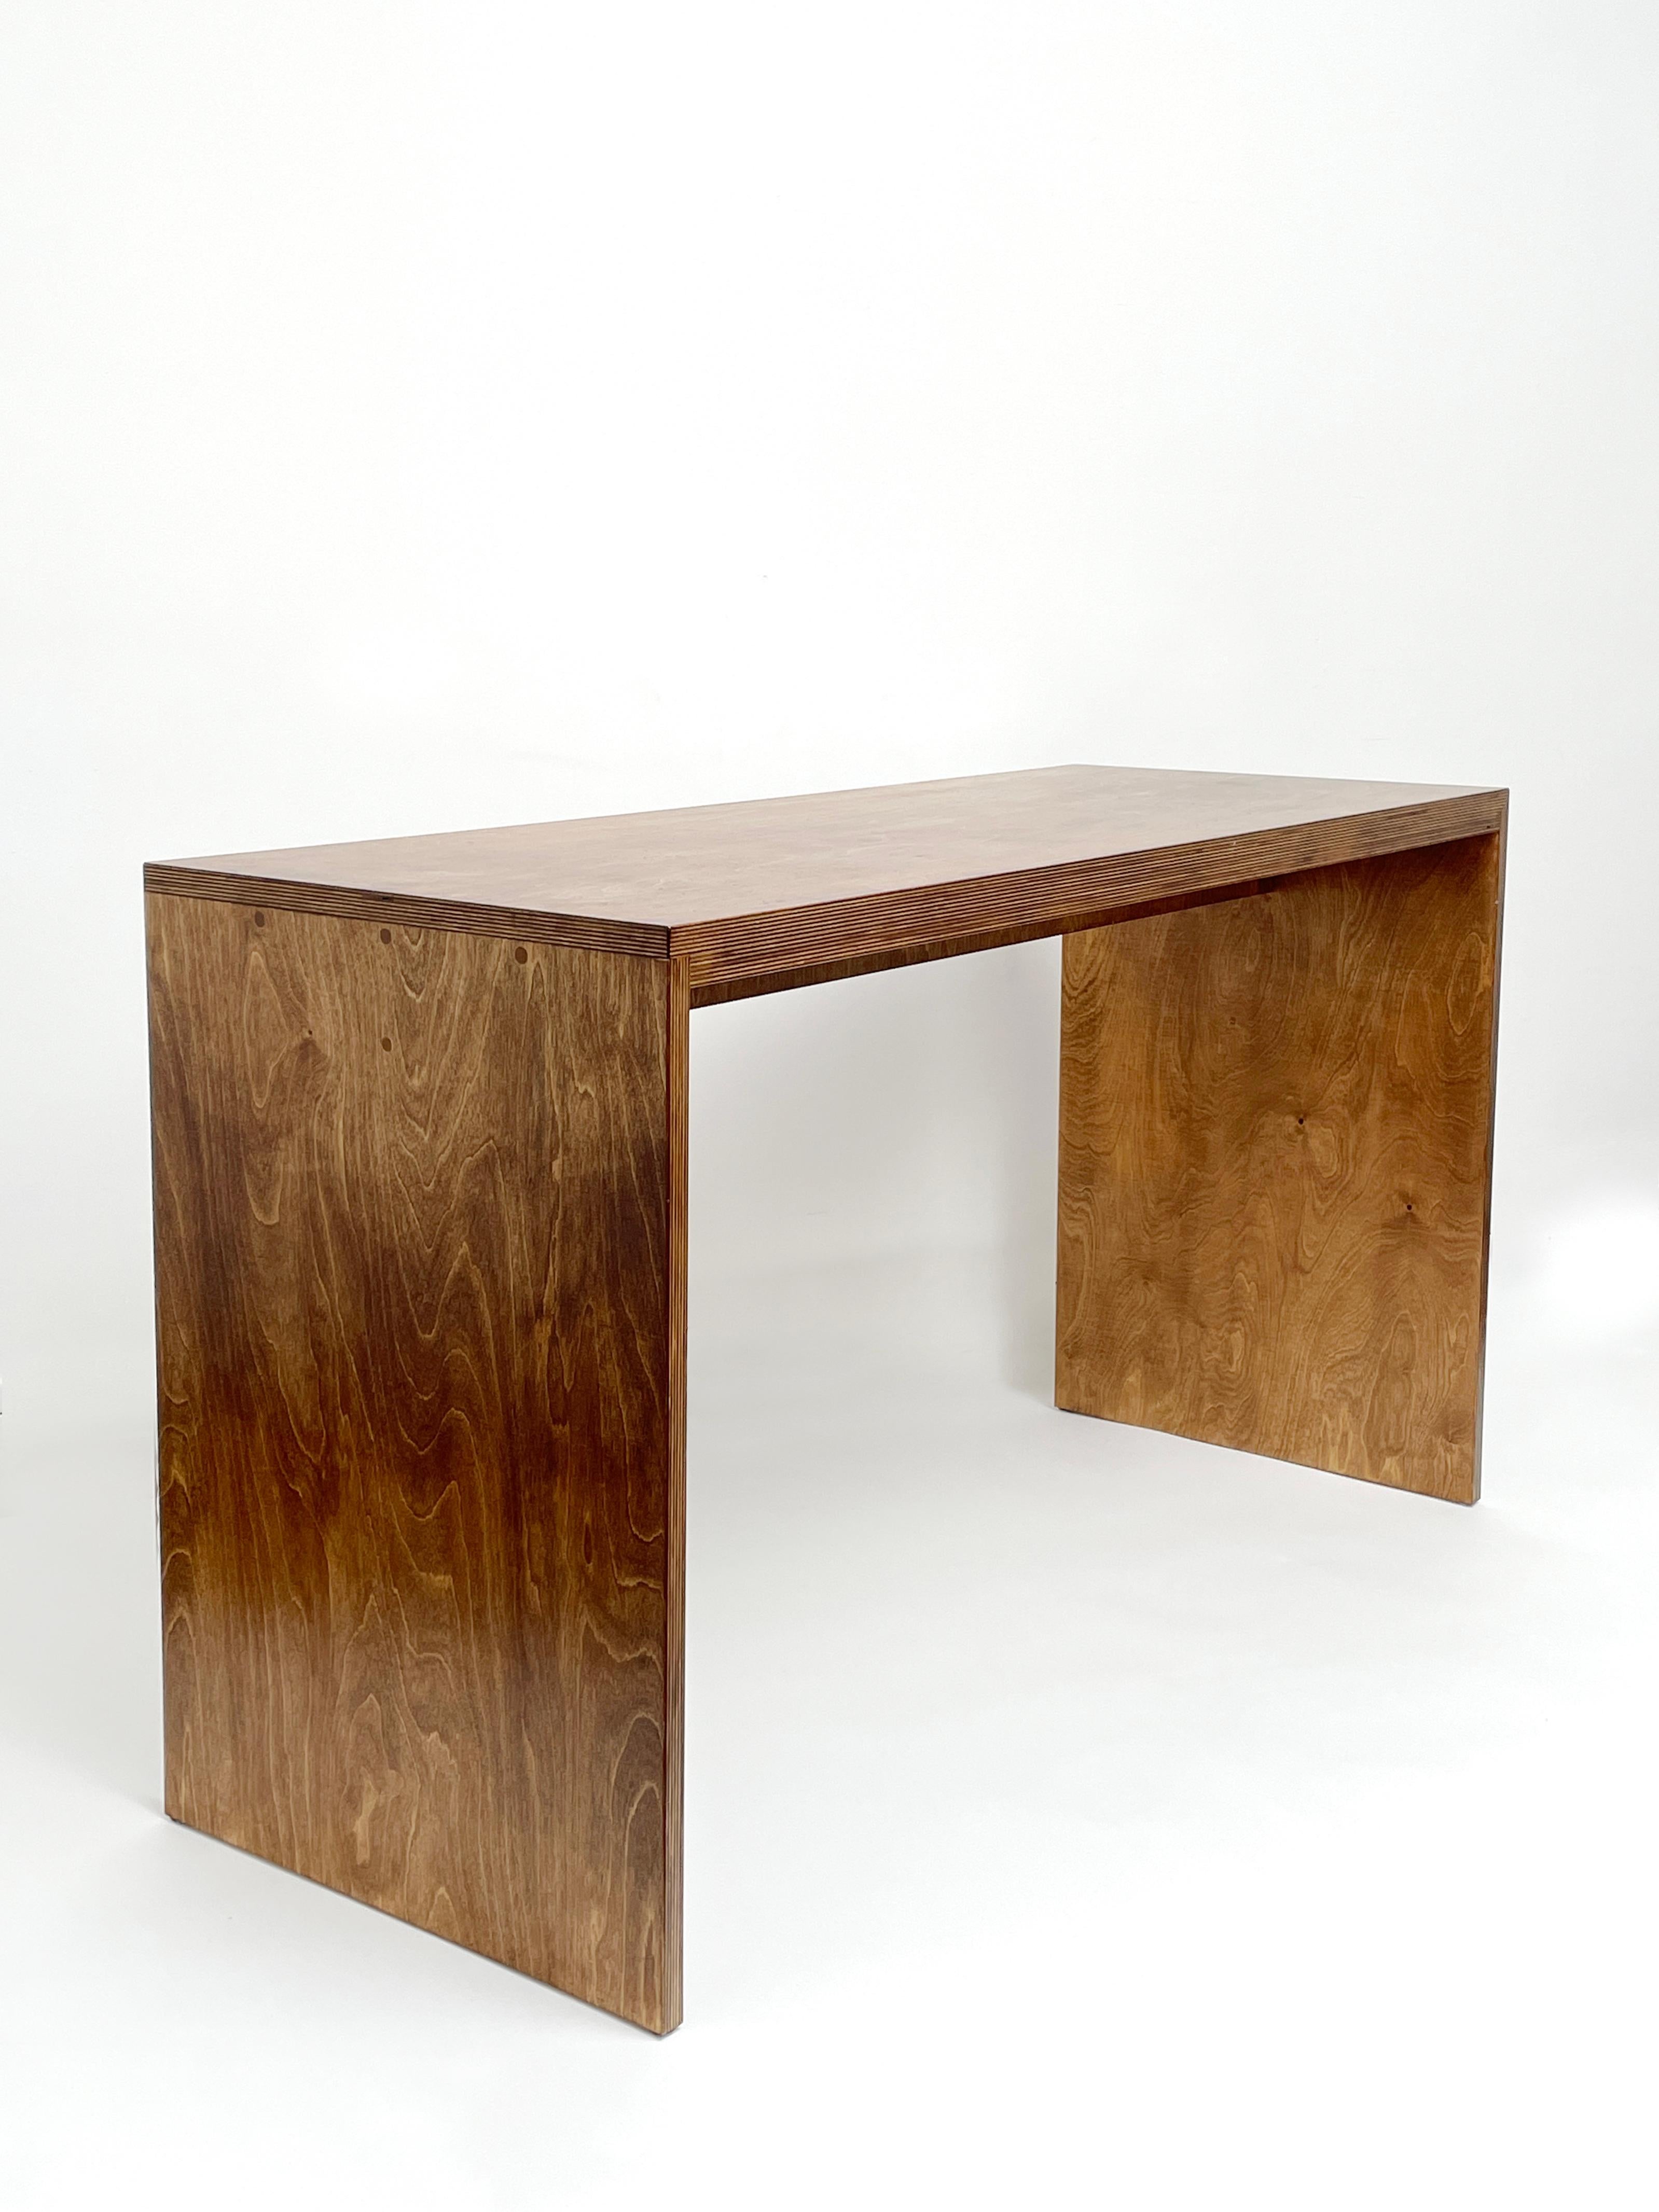 Einfacher Tisch von Goons
Abmessungen:  B 127,2 x T 50 x H 73 cm.
MATERIALIEN: Holz.
Die Abmessungen können um +/- 10 cm angepasst werden.

Goons hat seinen Sitz in Paris, Frankreich. Alle ihre Entwürfe sind aus Holz gefertigt.